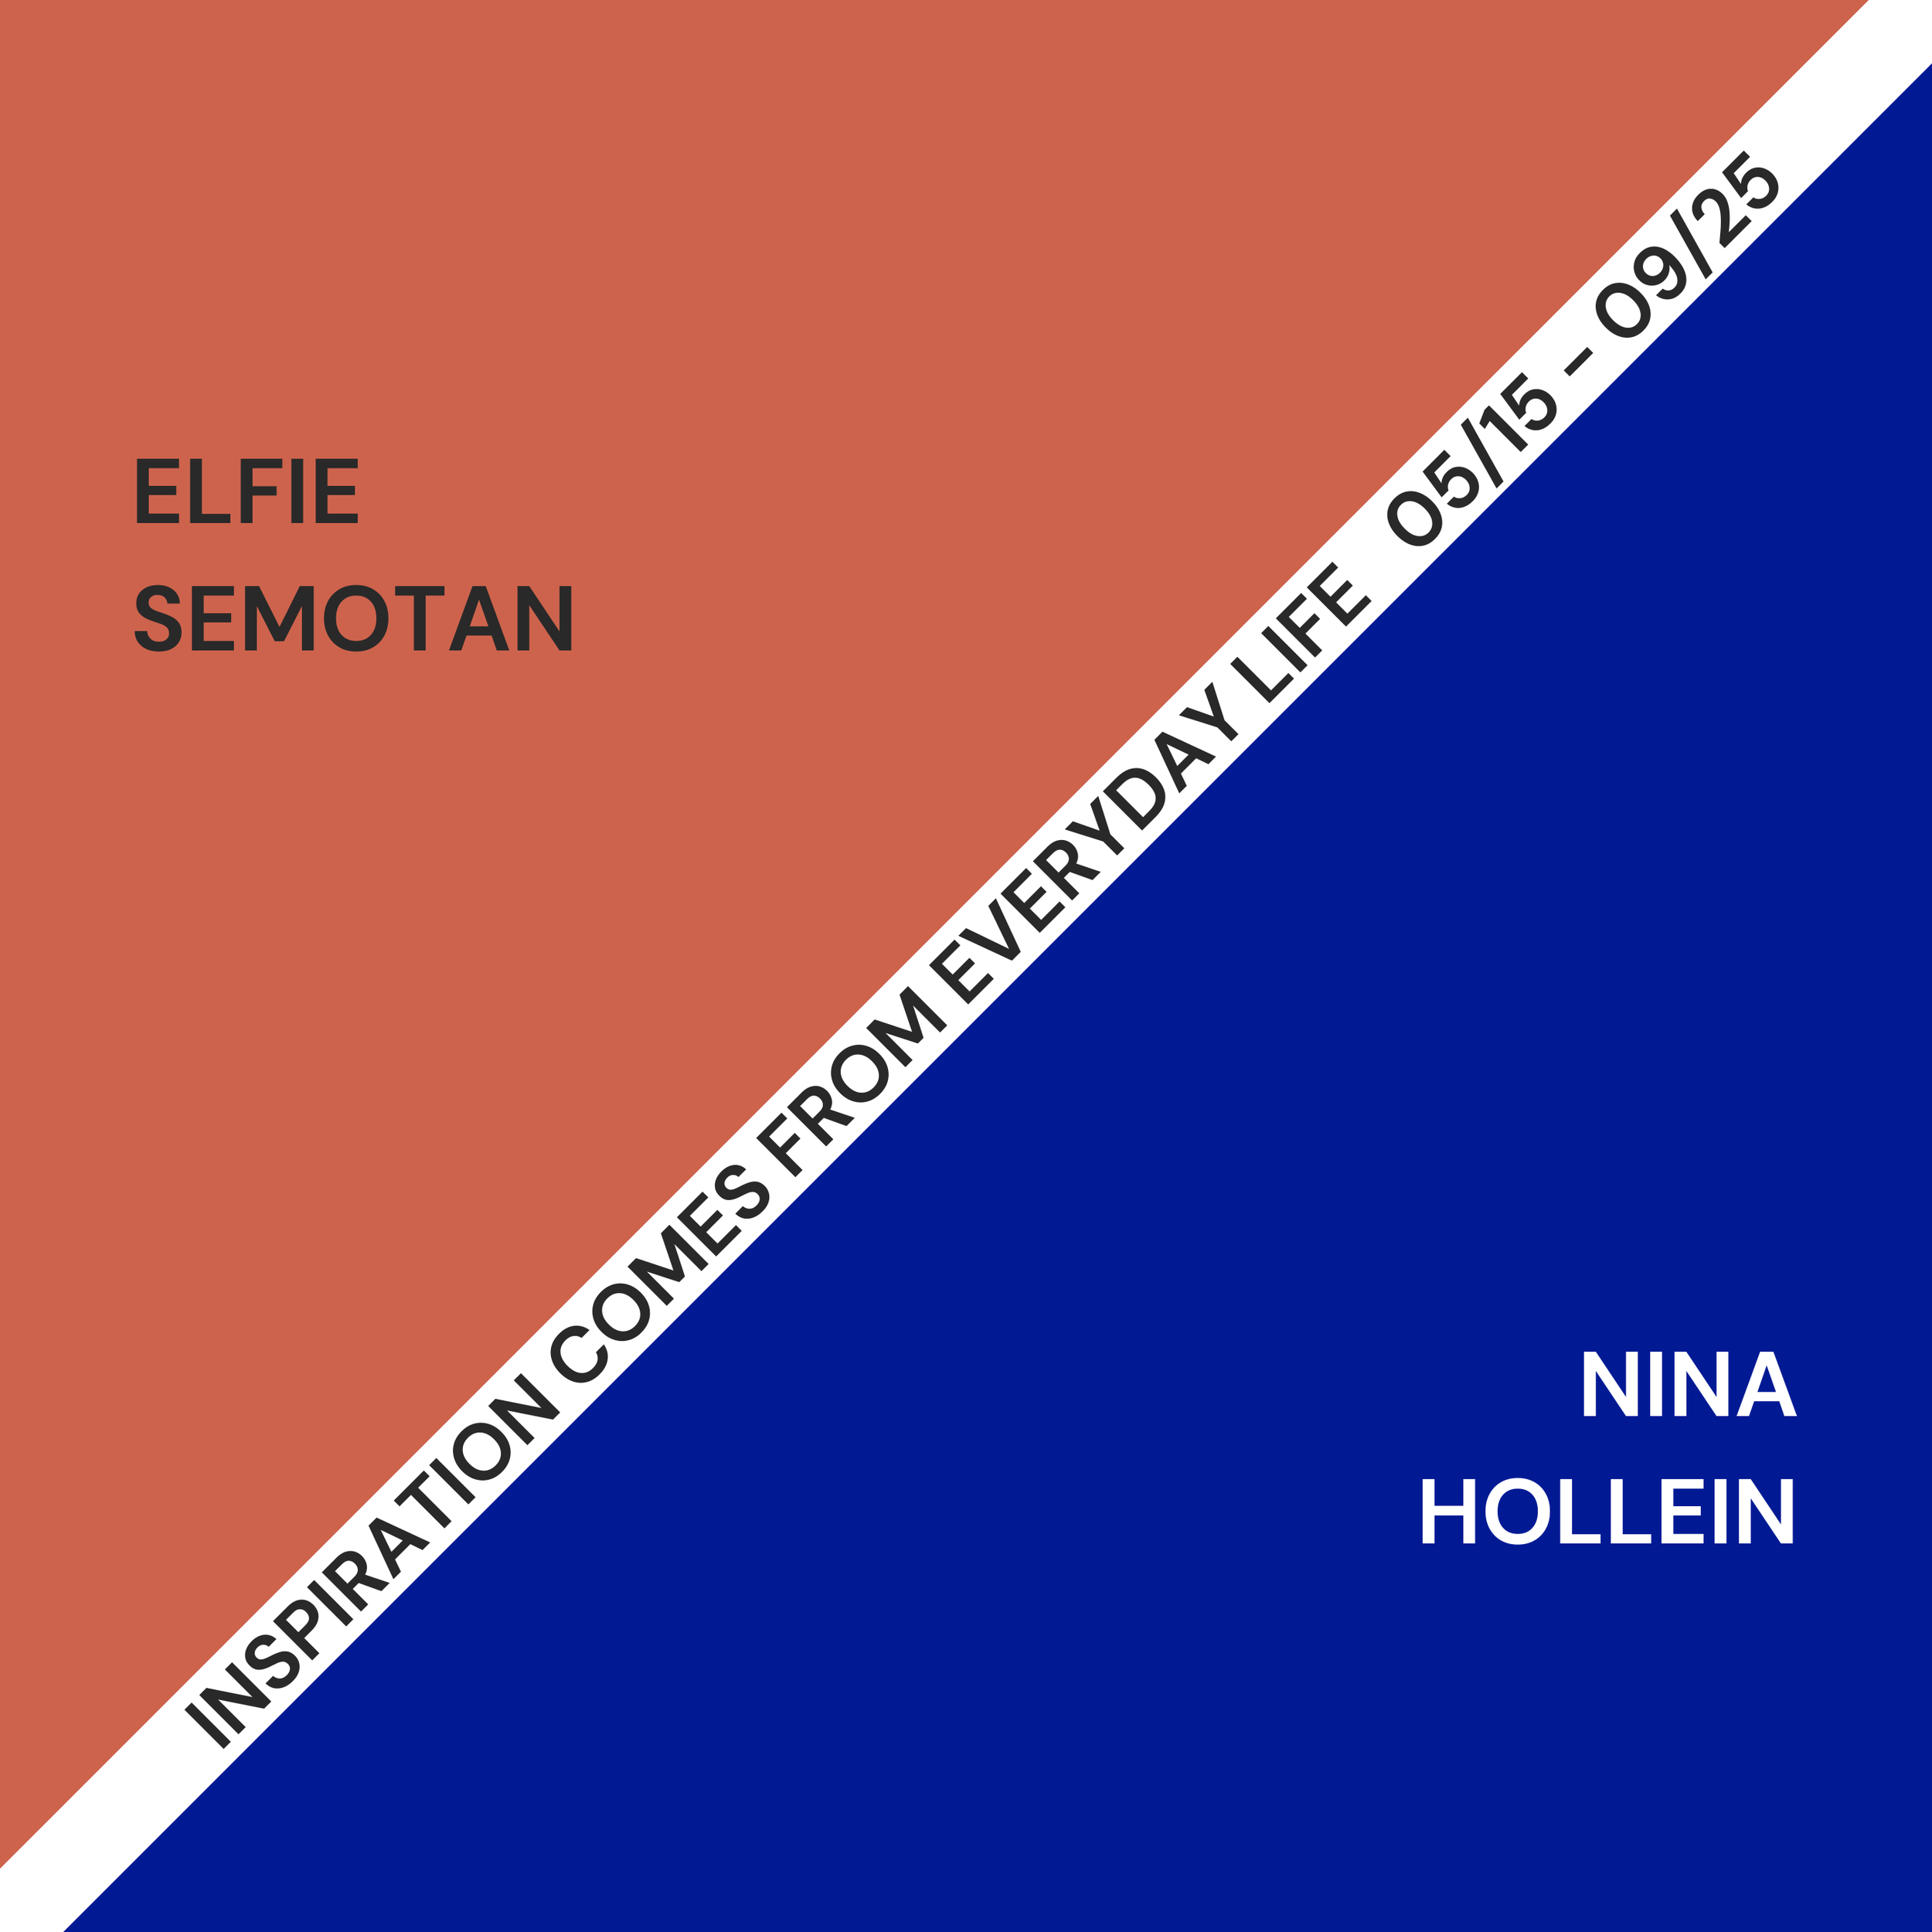 Die Inspiration kommt aus dem täglichen Leben: Werke von Elfie Semotan und Nina Hollein